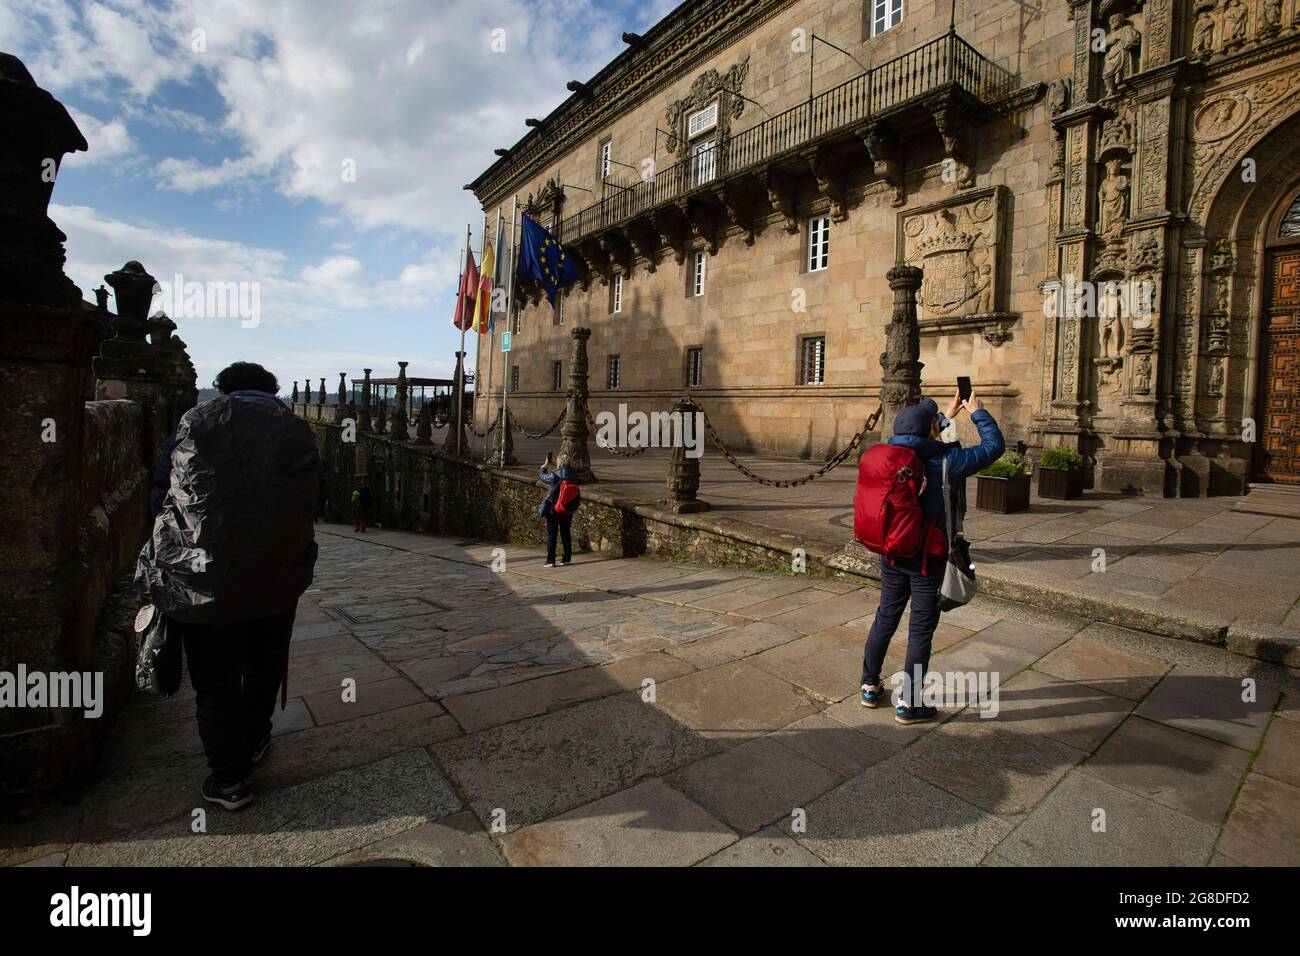 Varios peregrinos hacen Fotos del Hostal de los reyes Católicos en Santiago de Compostela. Stockfoto